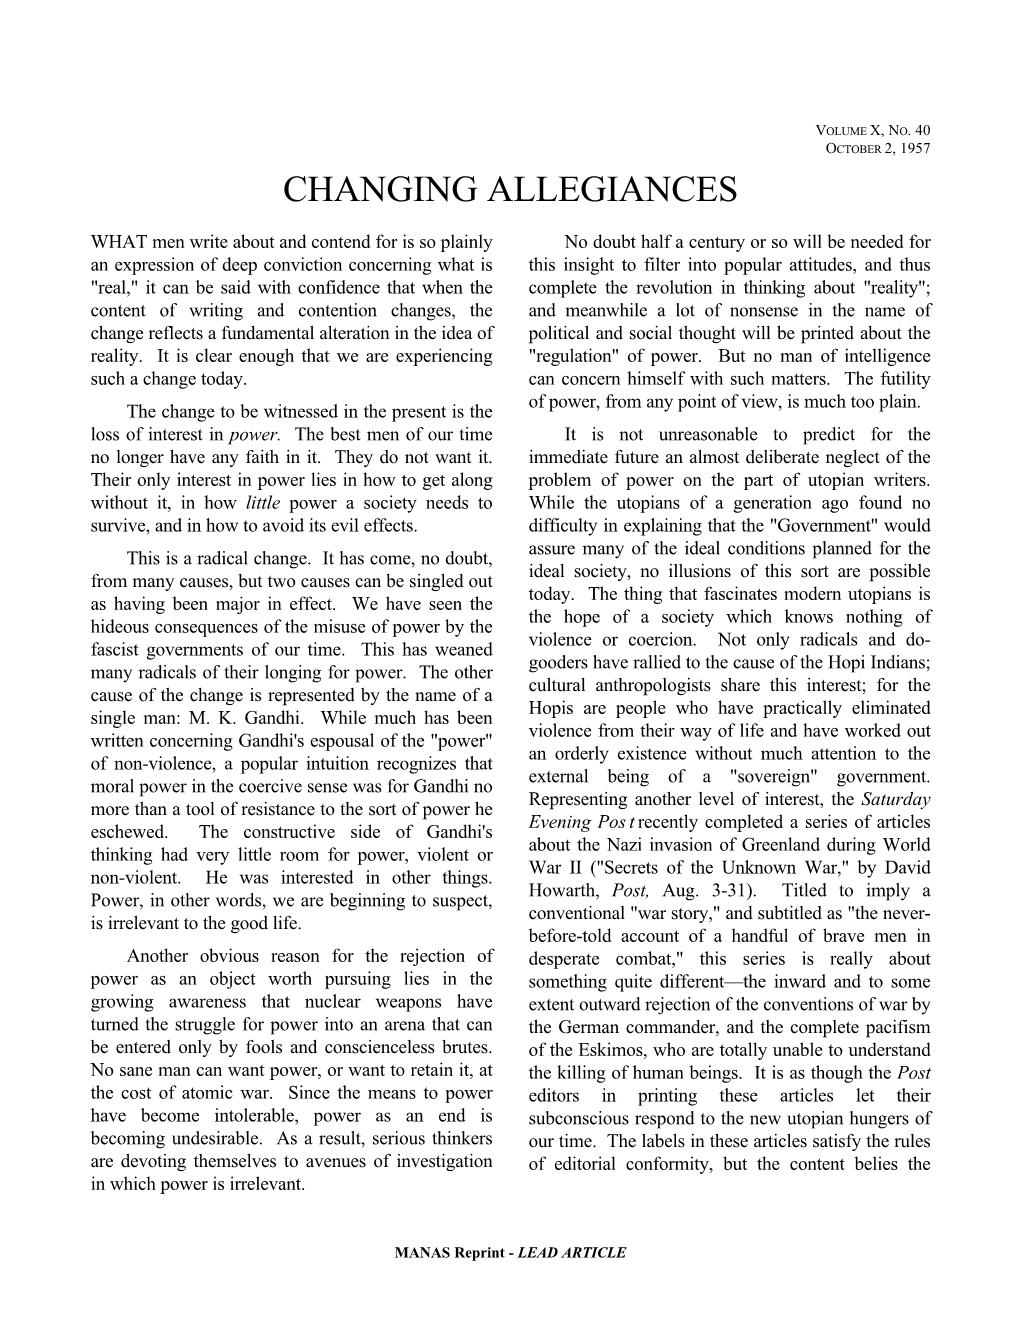 Changing Allegiances